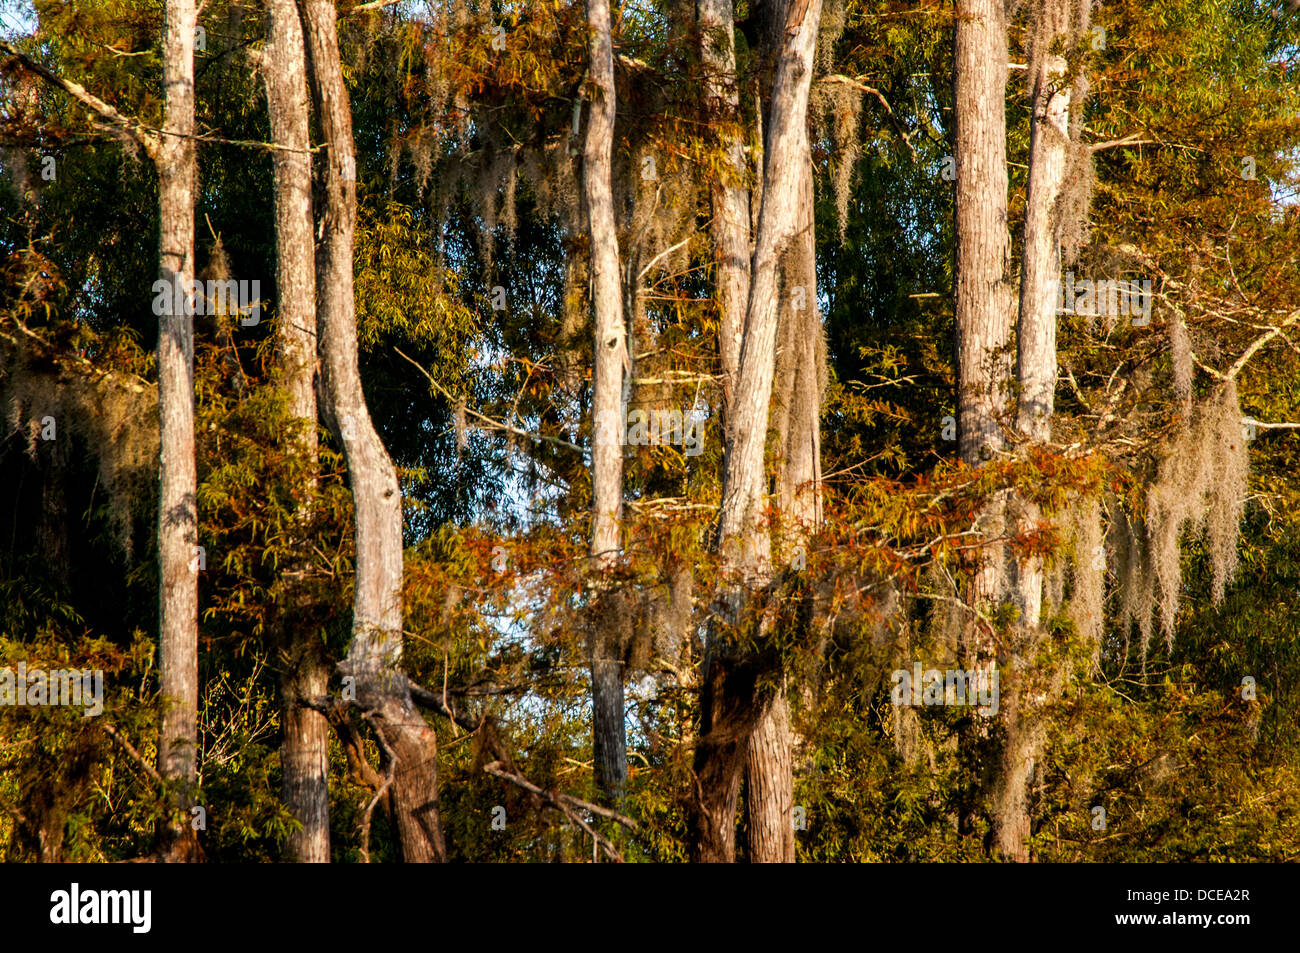 USA, Louisiane, bassin Atchafalaya, Pierce Lake au lever du soleil, le cyprès chauve debout dans l'eau. Banque D'Images